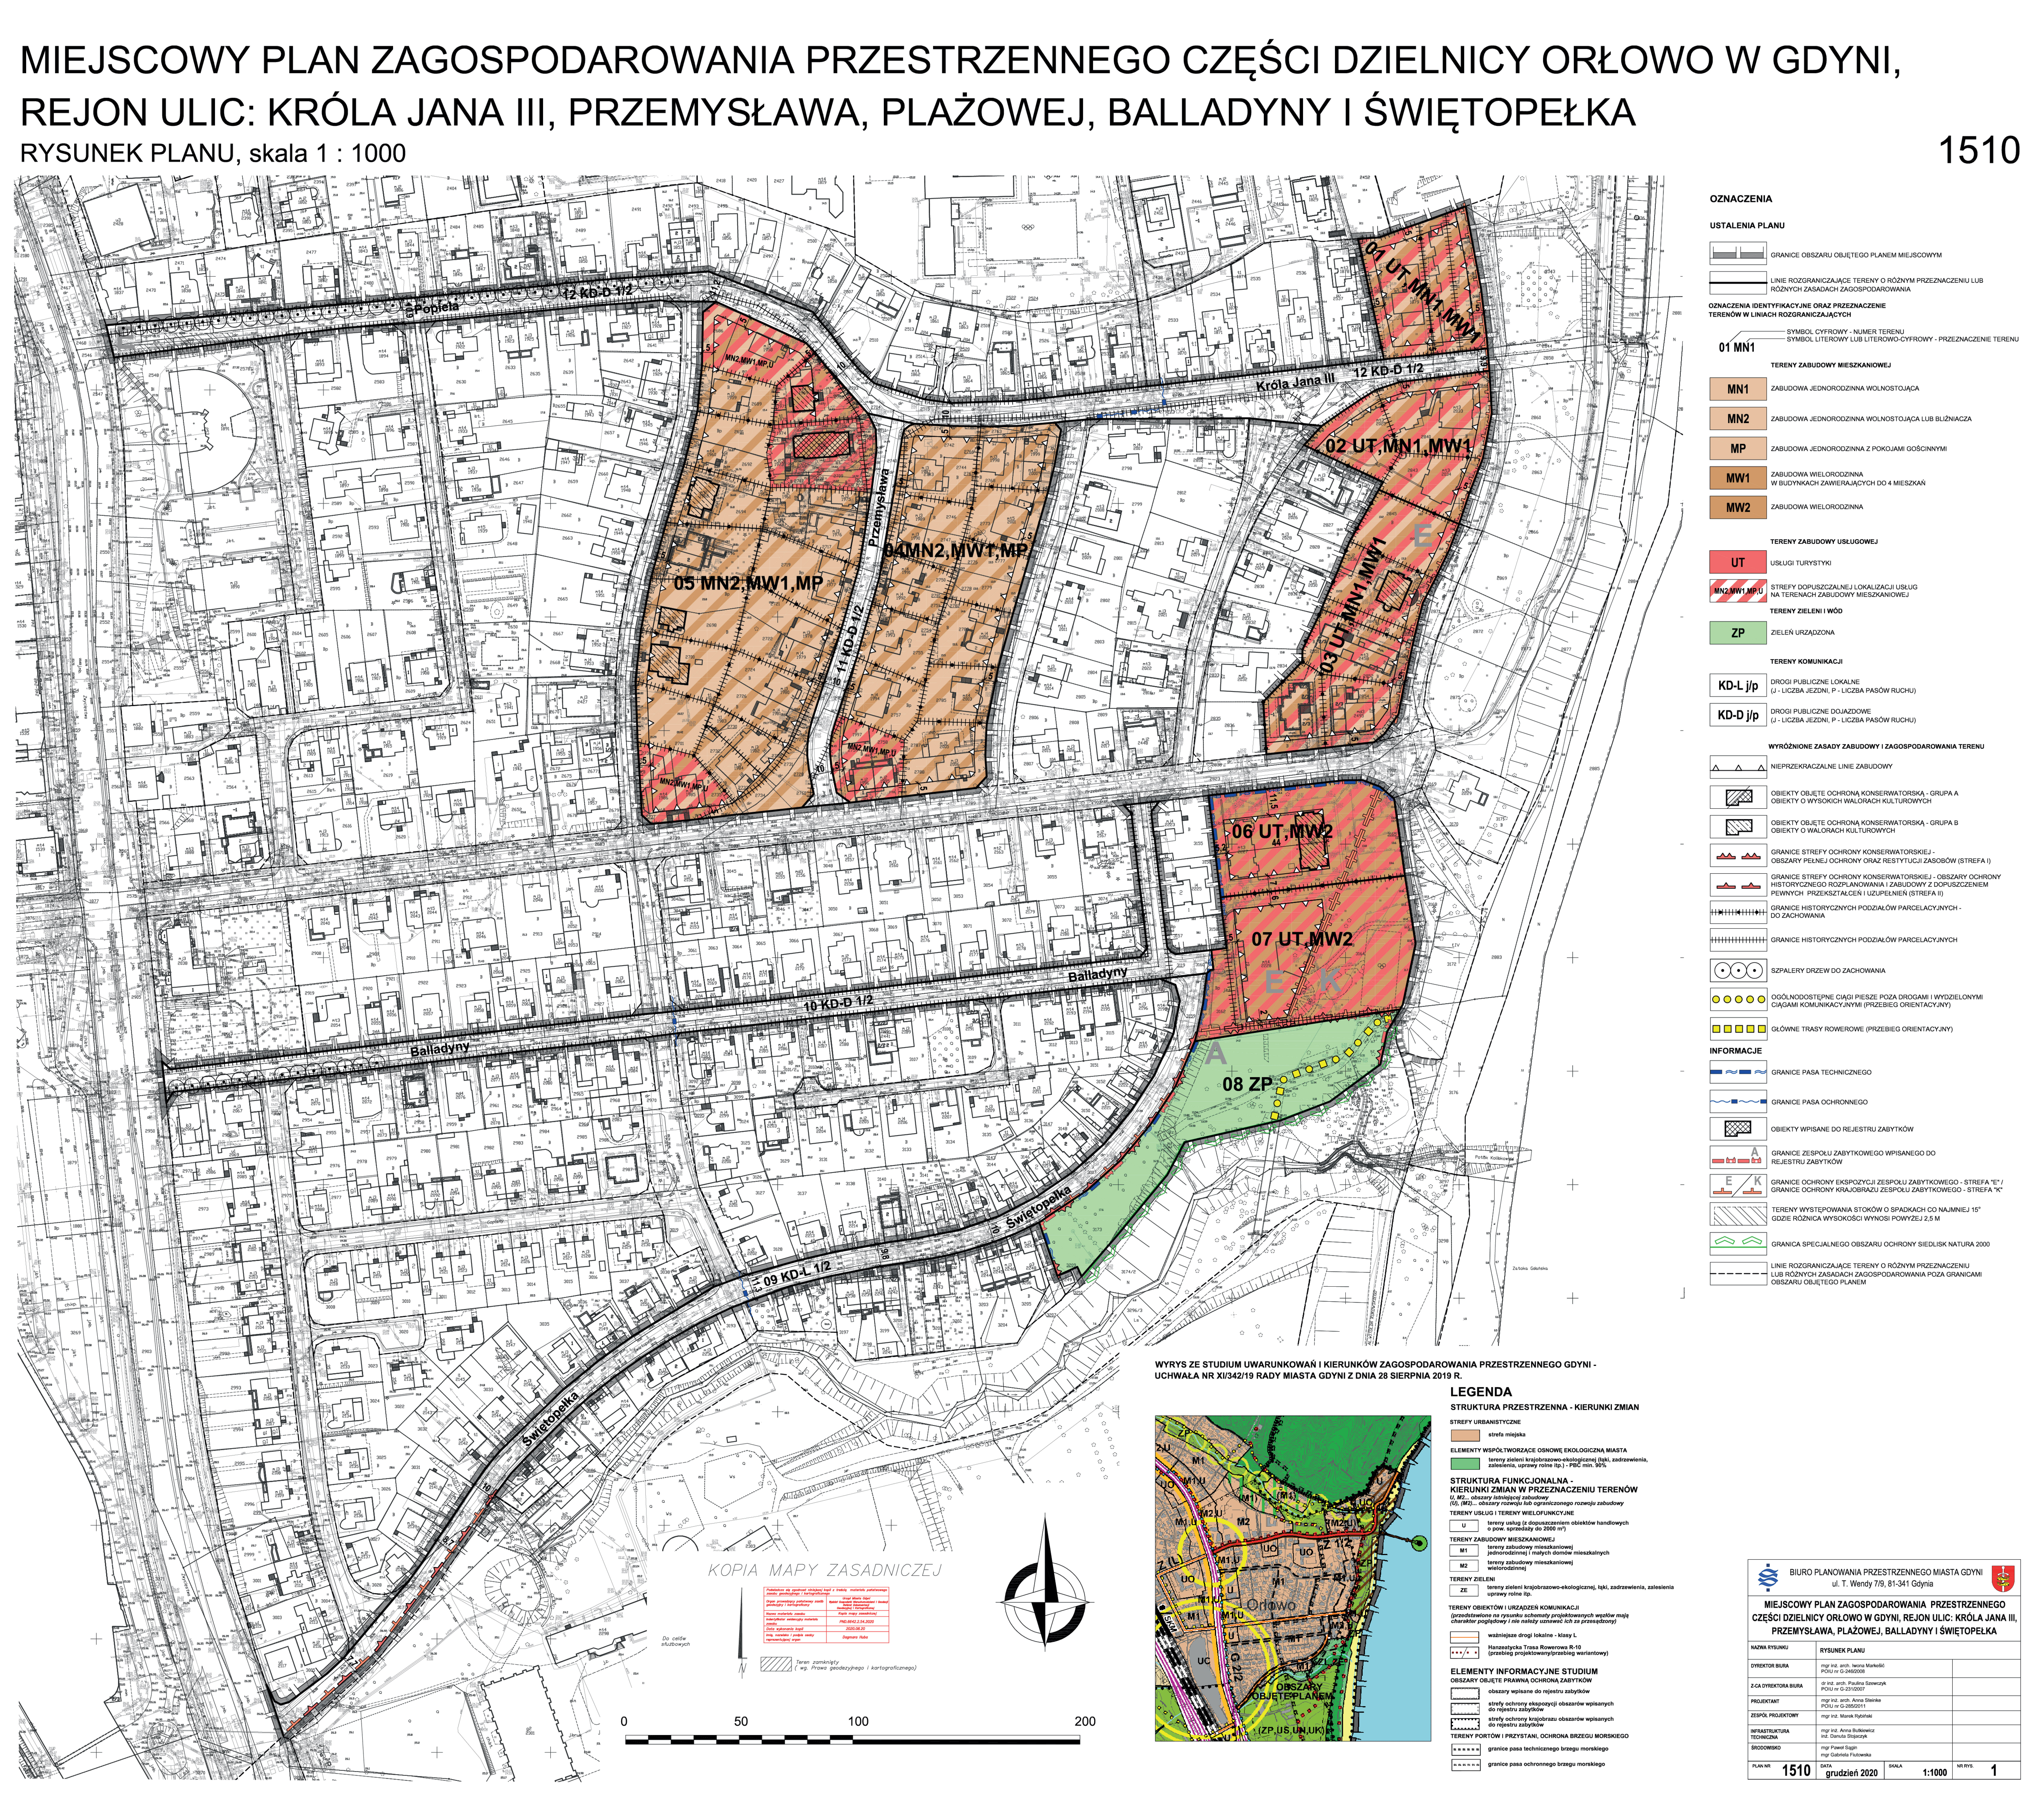  Drugi projekt miejscowego planu zagospodarowania przestrzennego części dzielnicy Orłowo obejmuje rejon ulic: Króla Jana III, Przemysława, Plażowej, Balladyny i Świętopełka.